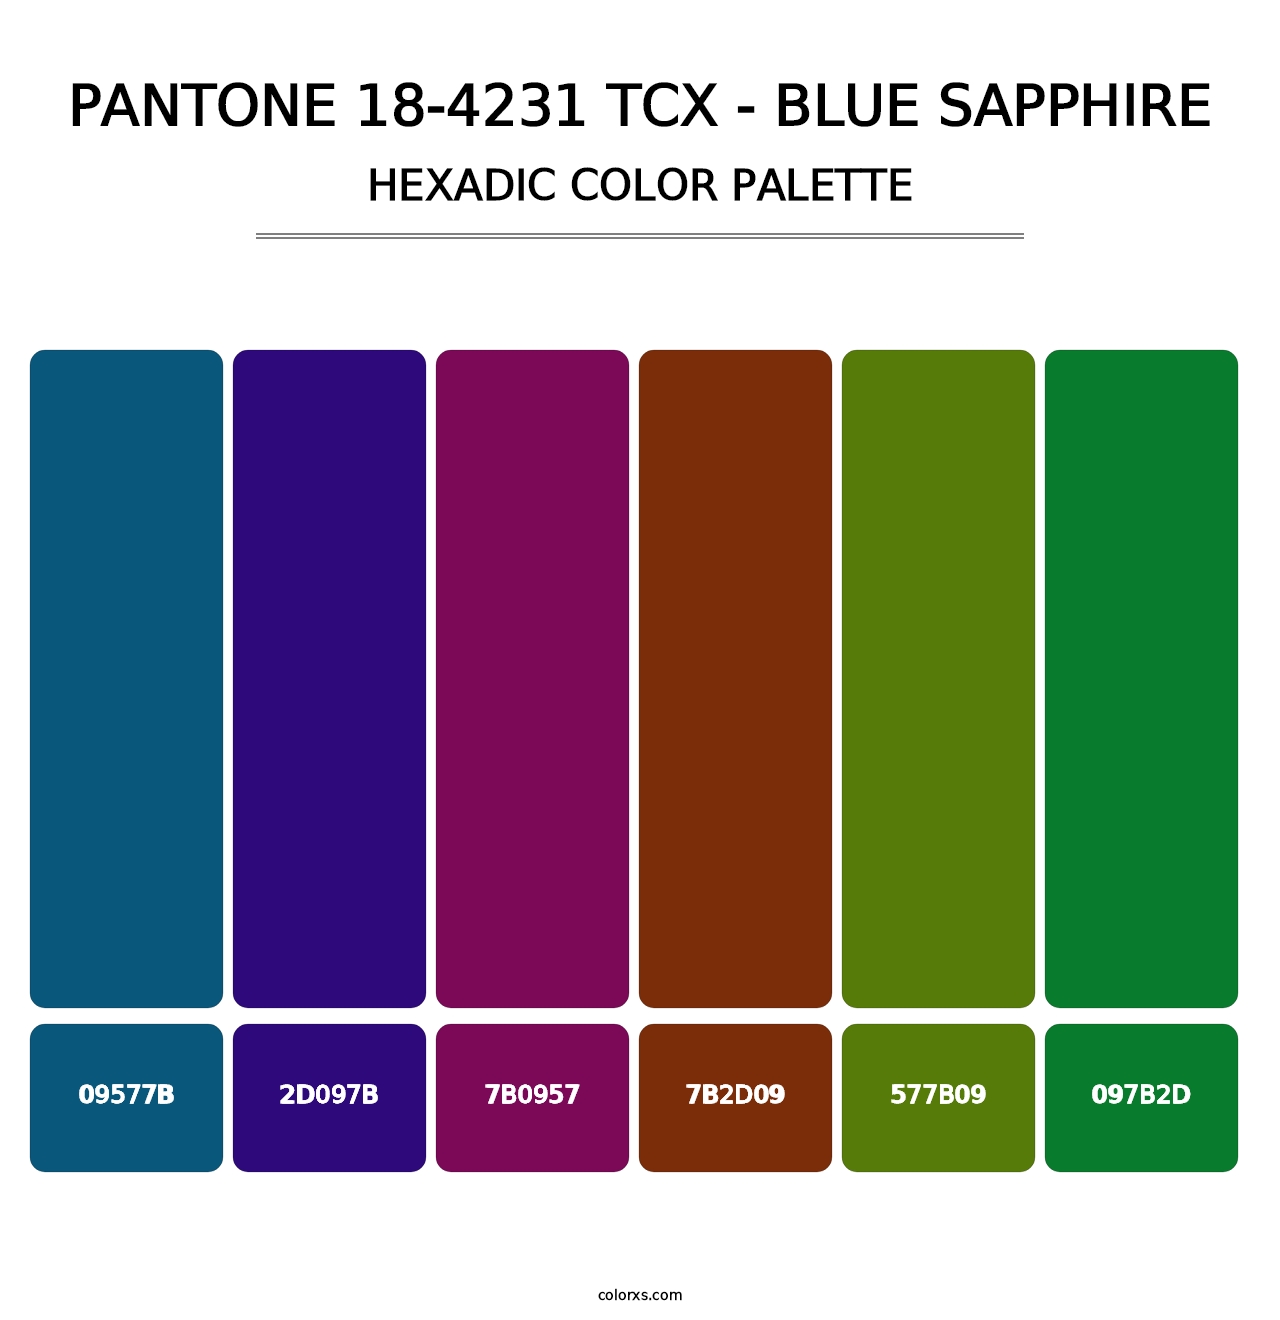 PANTONE 18-4231 TCX - Blue Sapphire - Hexadic Color Palette